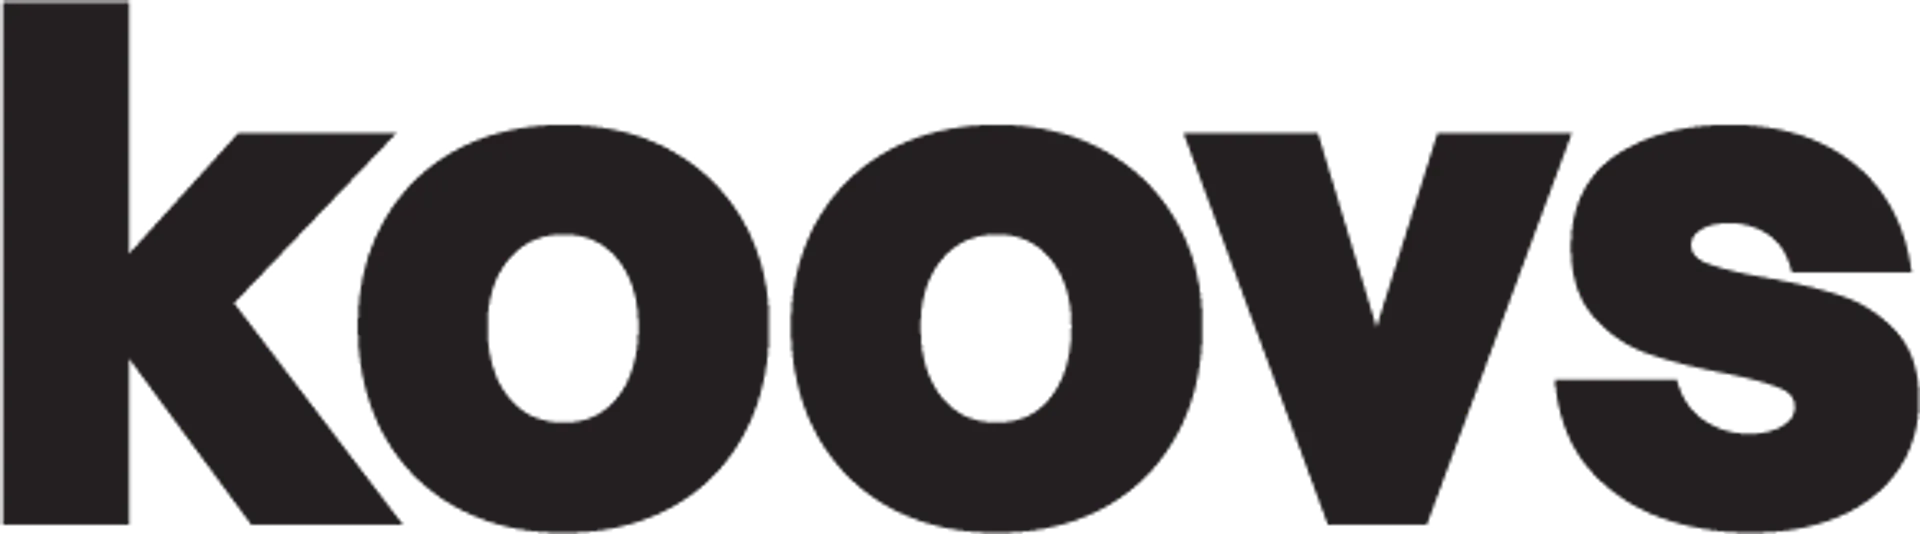 KOOVS logo current weekly ad